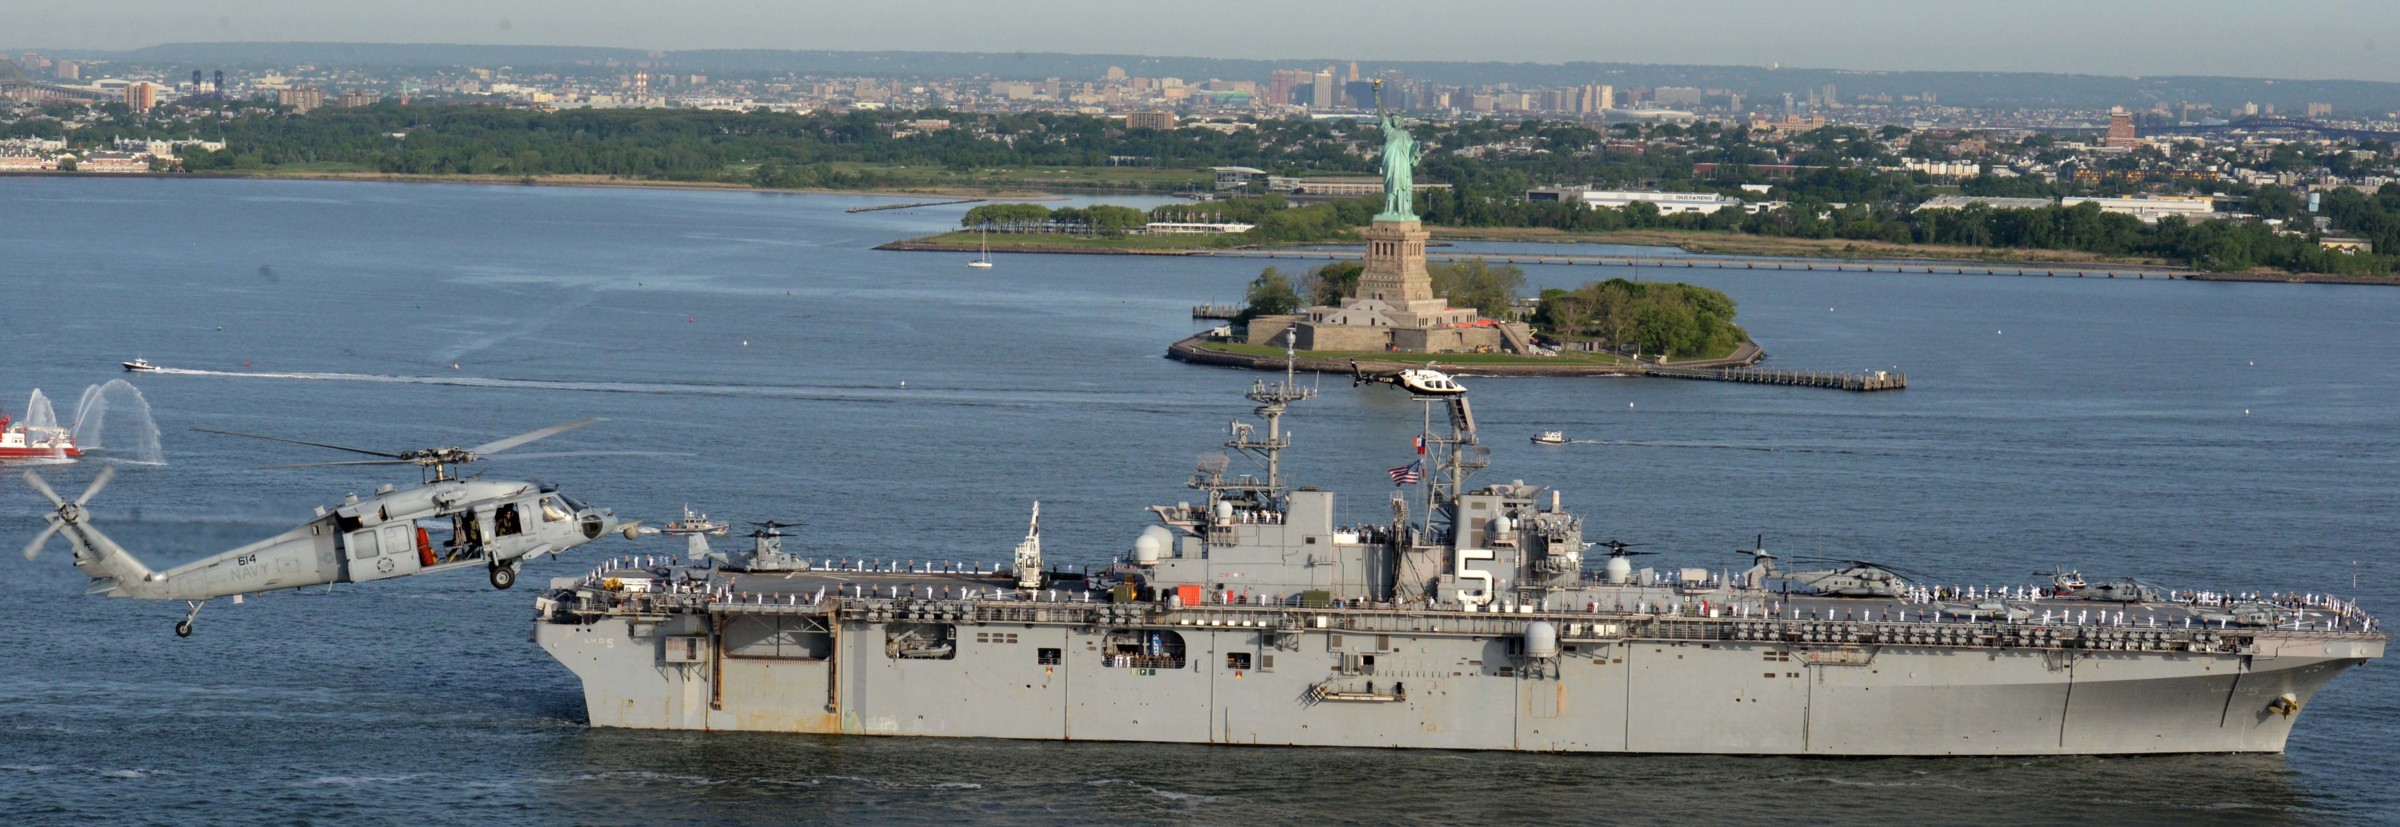 lhd-5 uss bataan wasp class amphibious assault ship dock landing helicopter us navy new york statue liberty 179